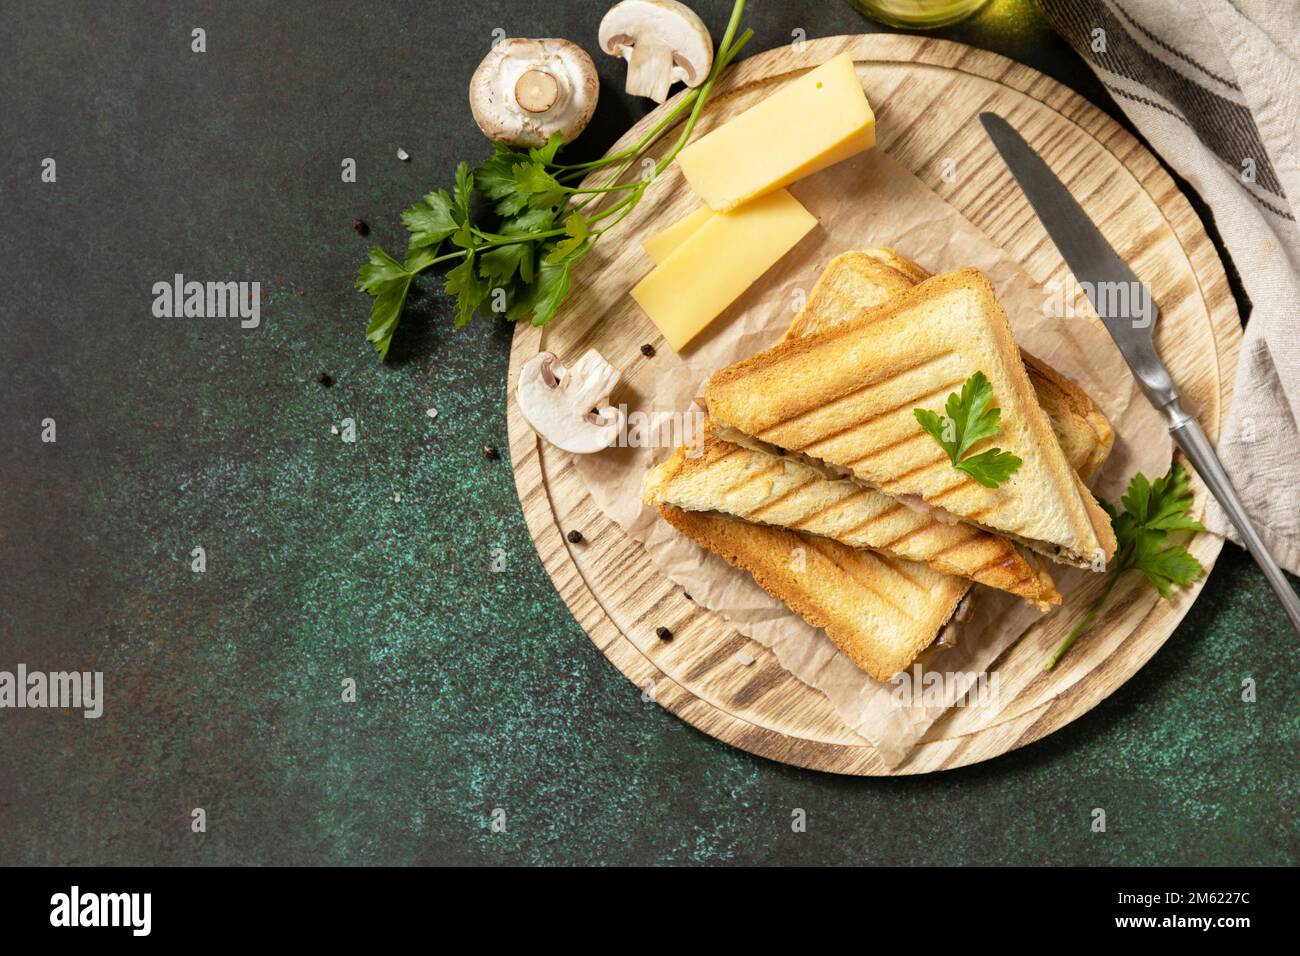 Délicieux sandwich au fromage grillé, au bacon et aux champignons. Petit-déjeuner fait maison sur une table en pierre sombre. Vue de dessus. Copier l'espace. Banque D'Images